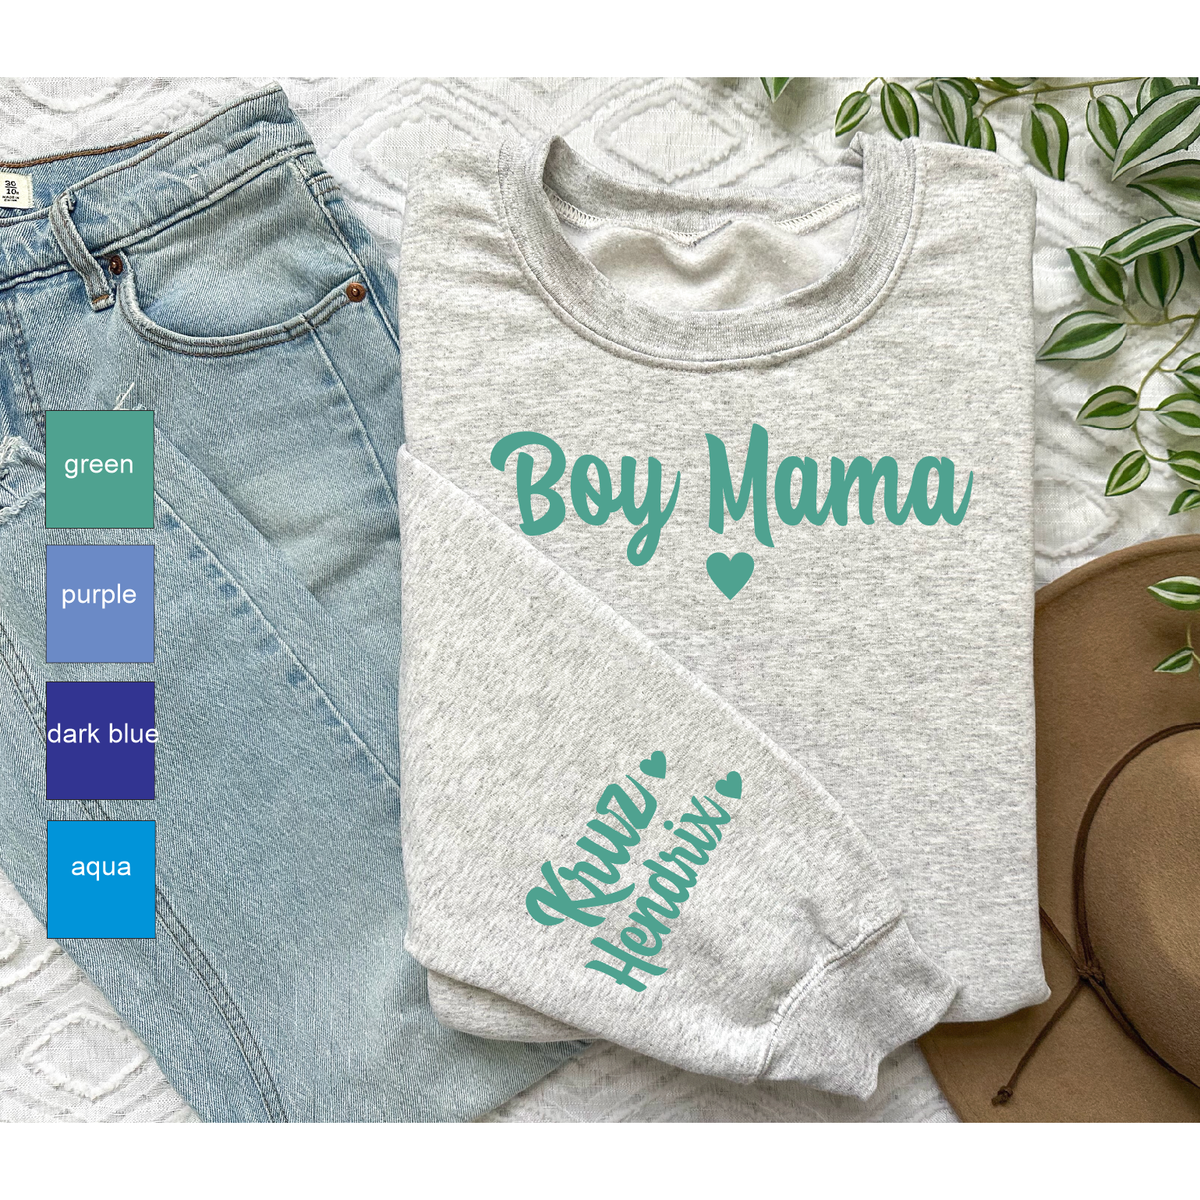 Boy Mama Sleeve Custom Sweatshirt